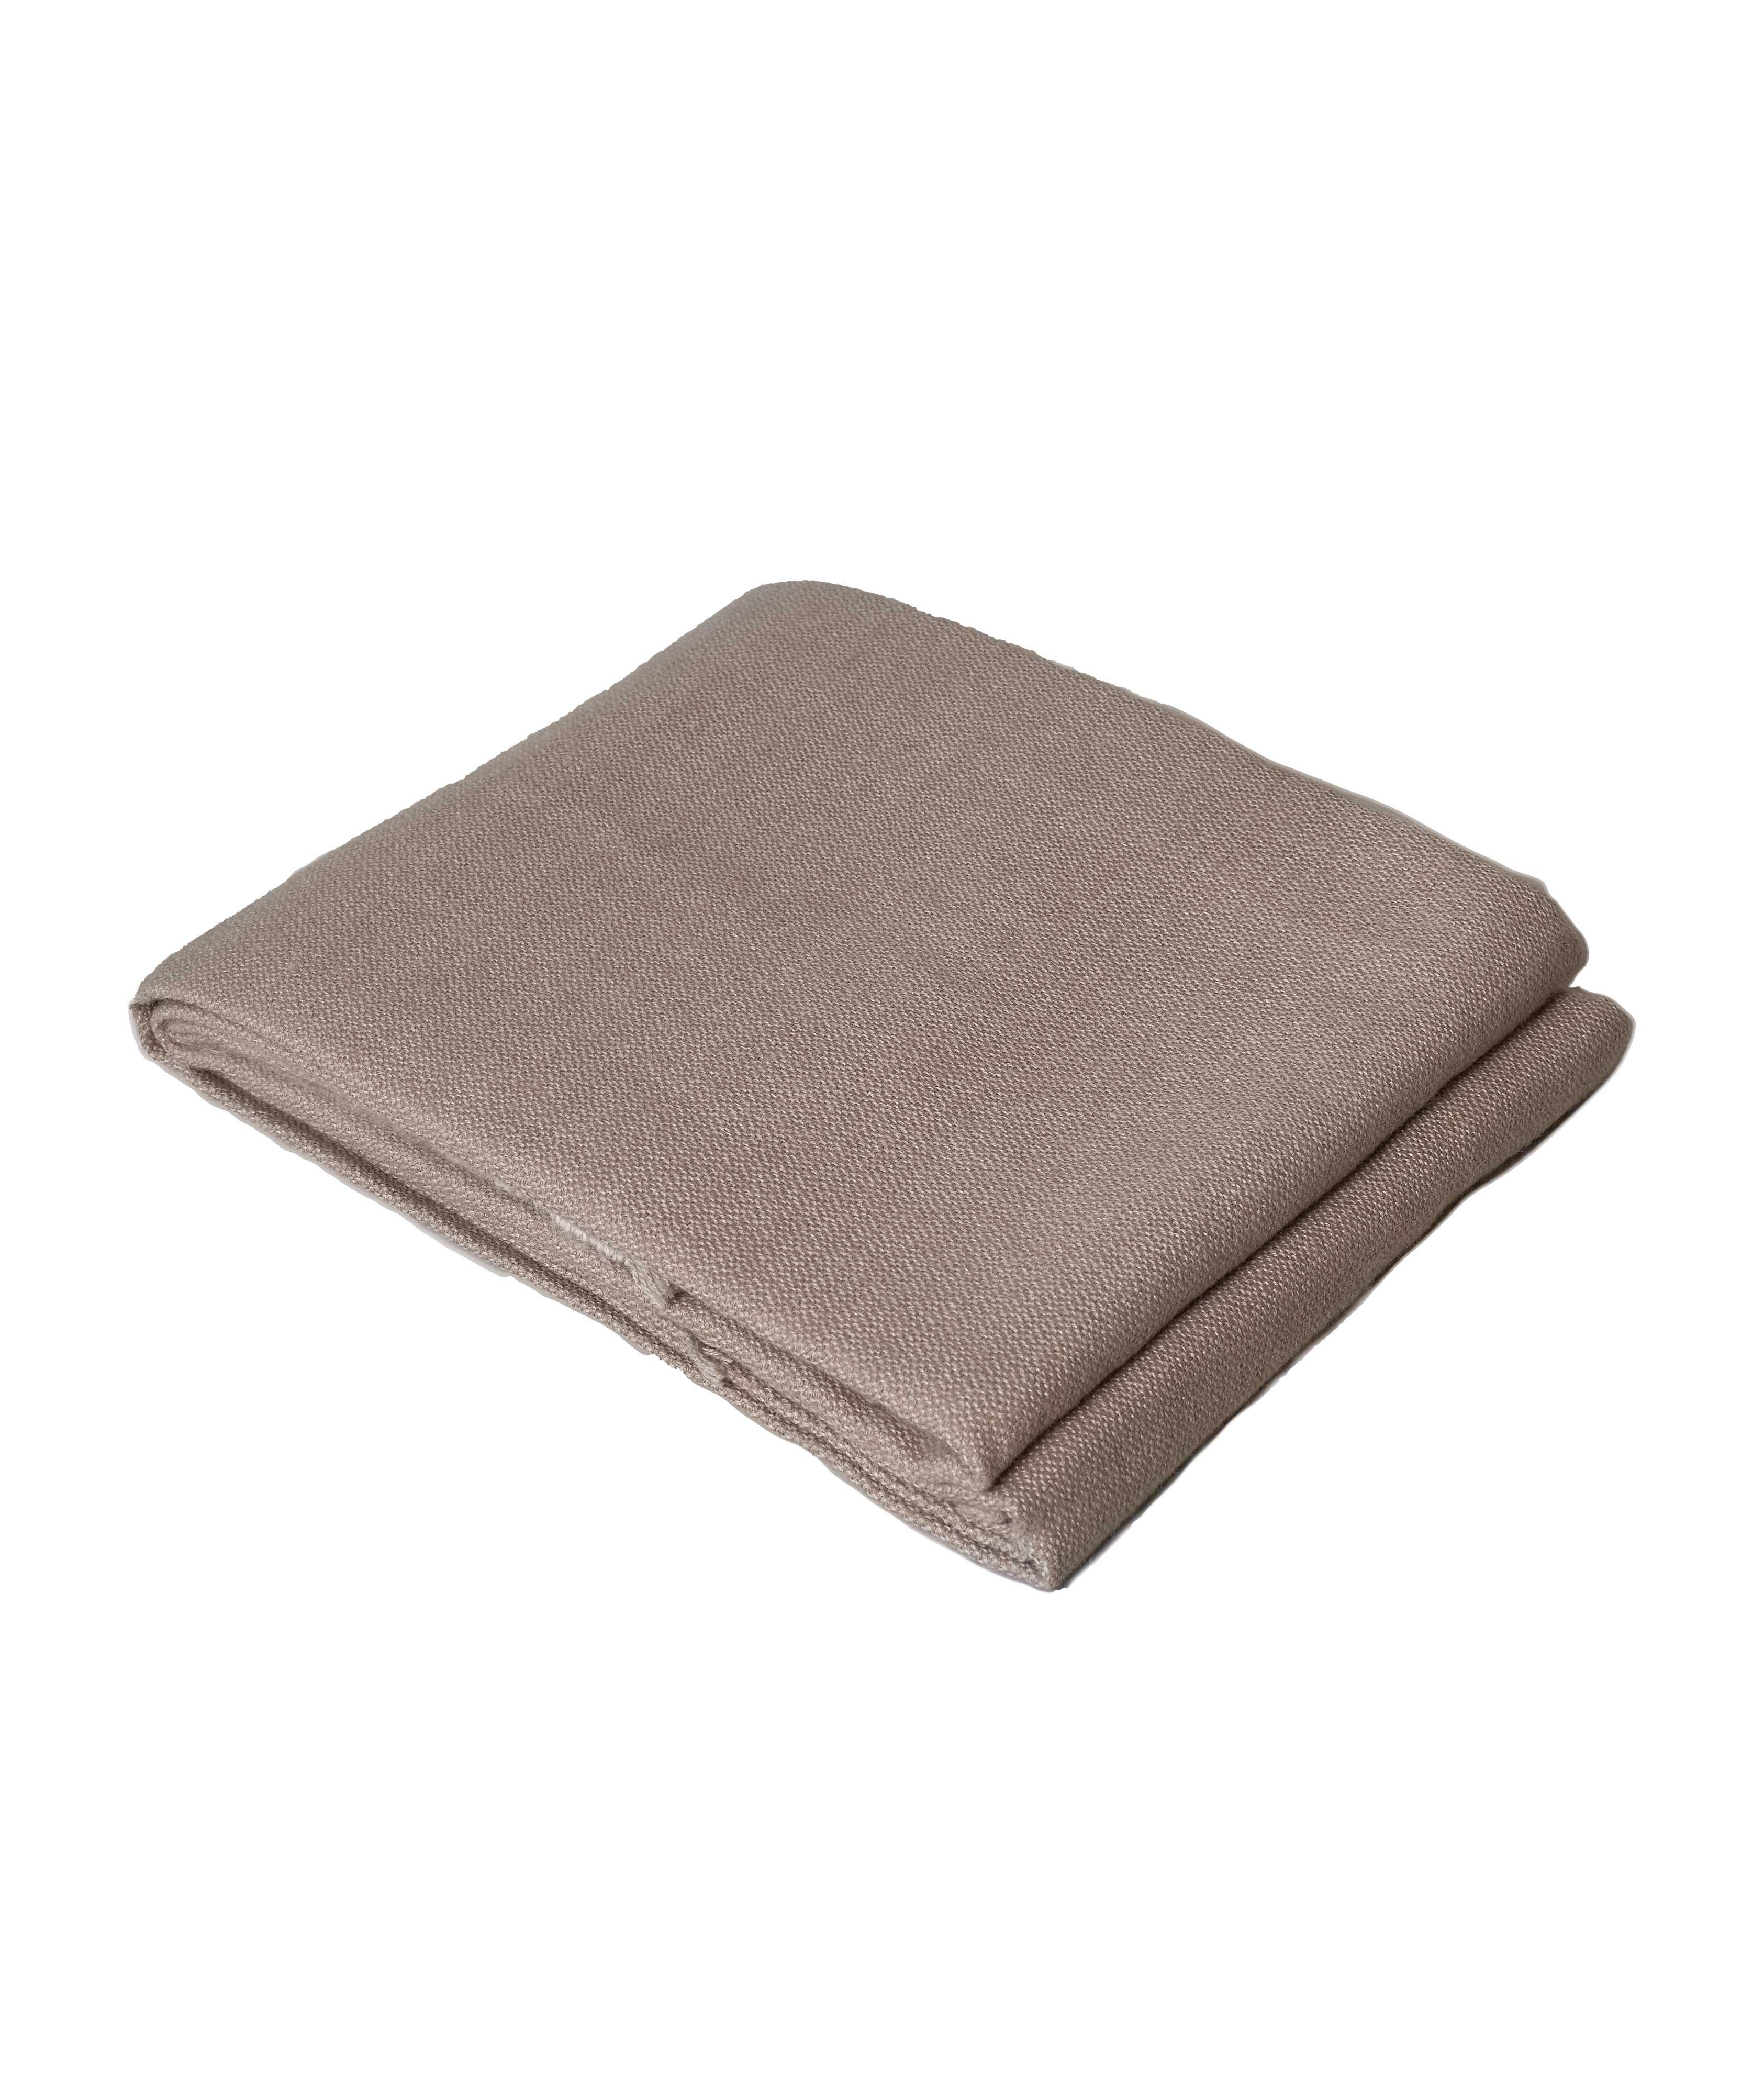 Super-Soft Throw Blanket | Ash Rose image 1